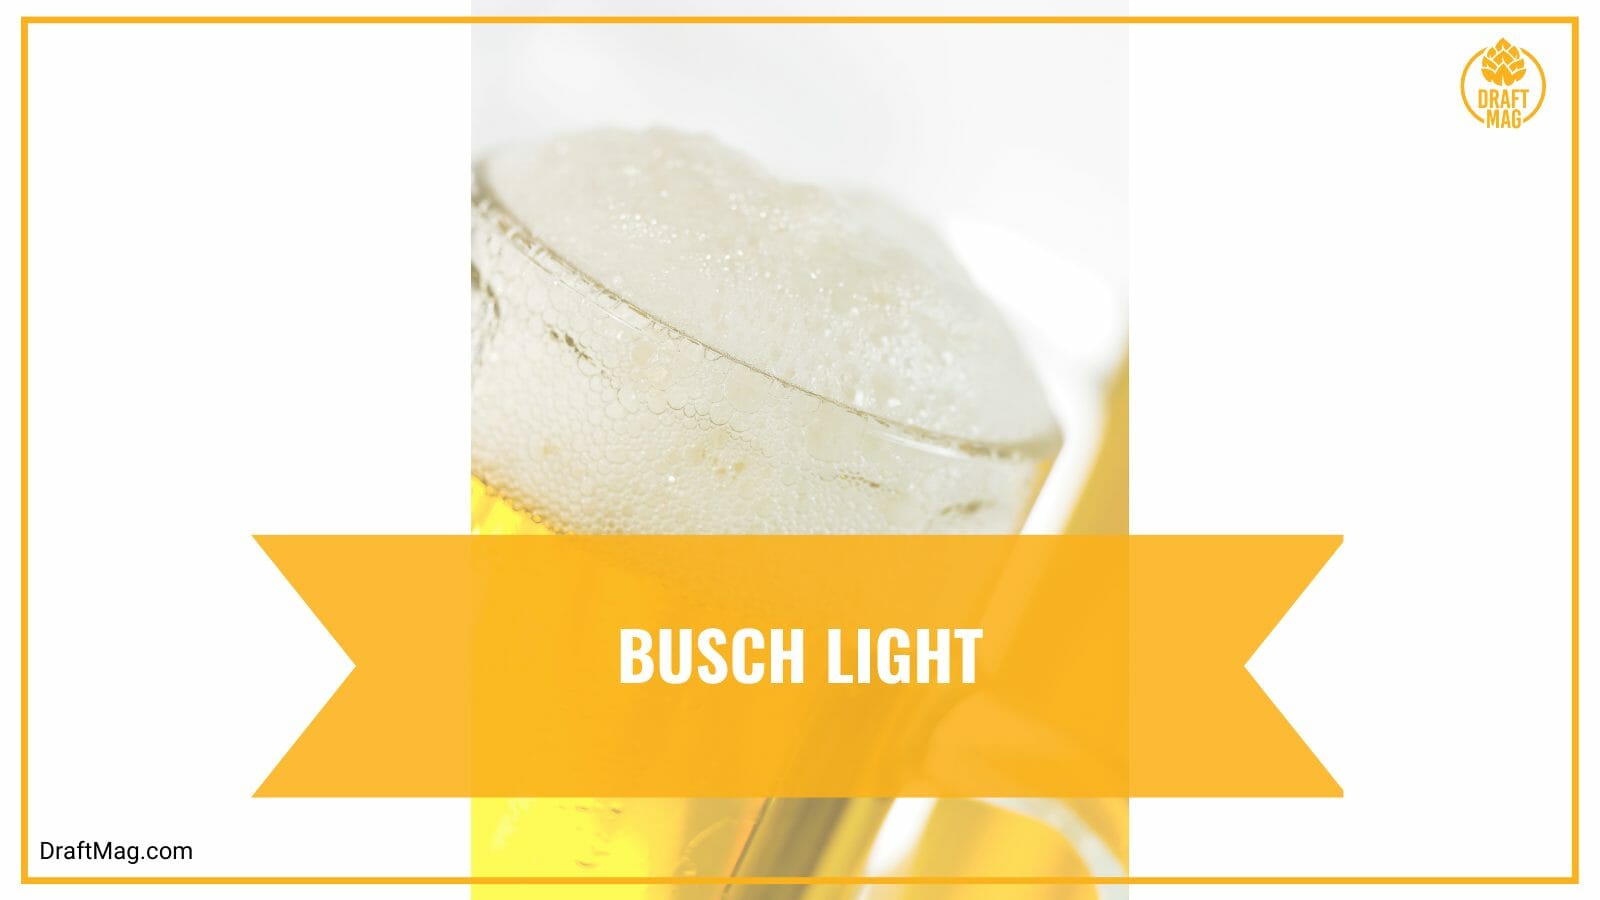 Busch light